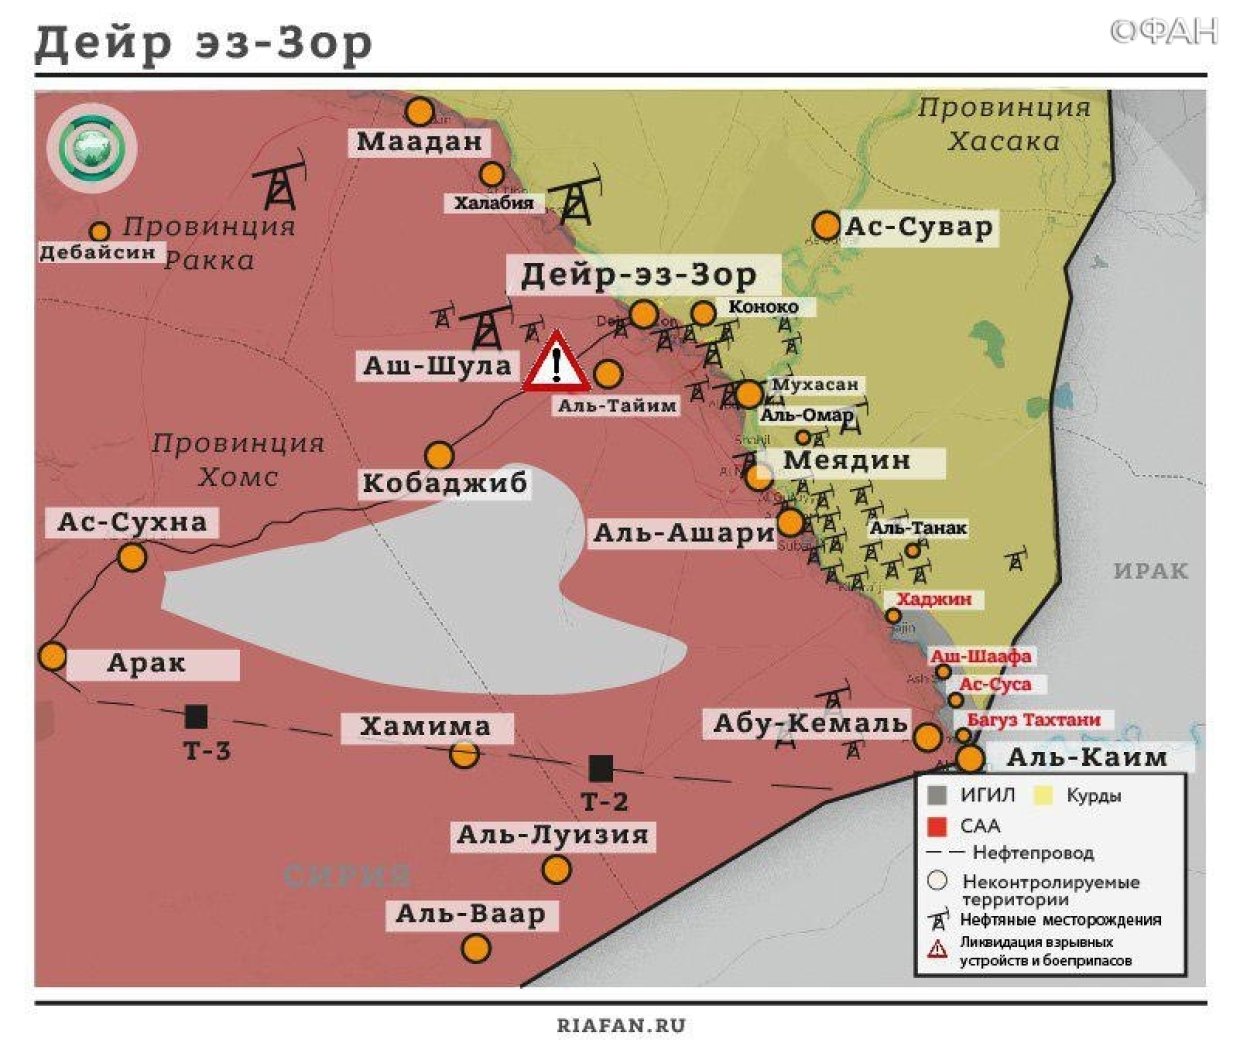 Сирия: США уходят, коалиция остается - союзники Вашингтона продолжат операцию против ИГ